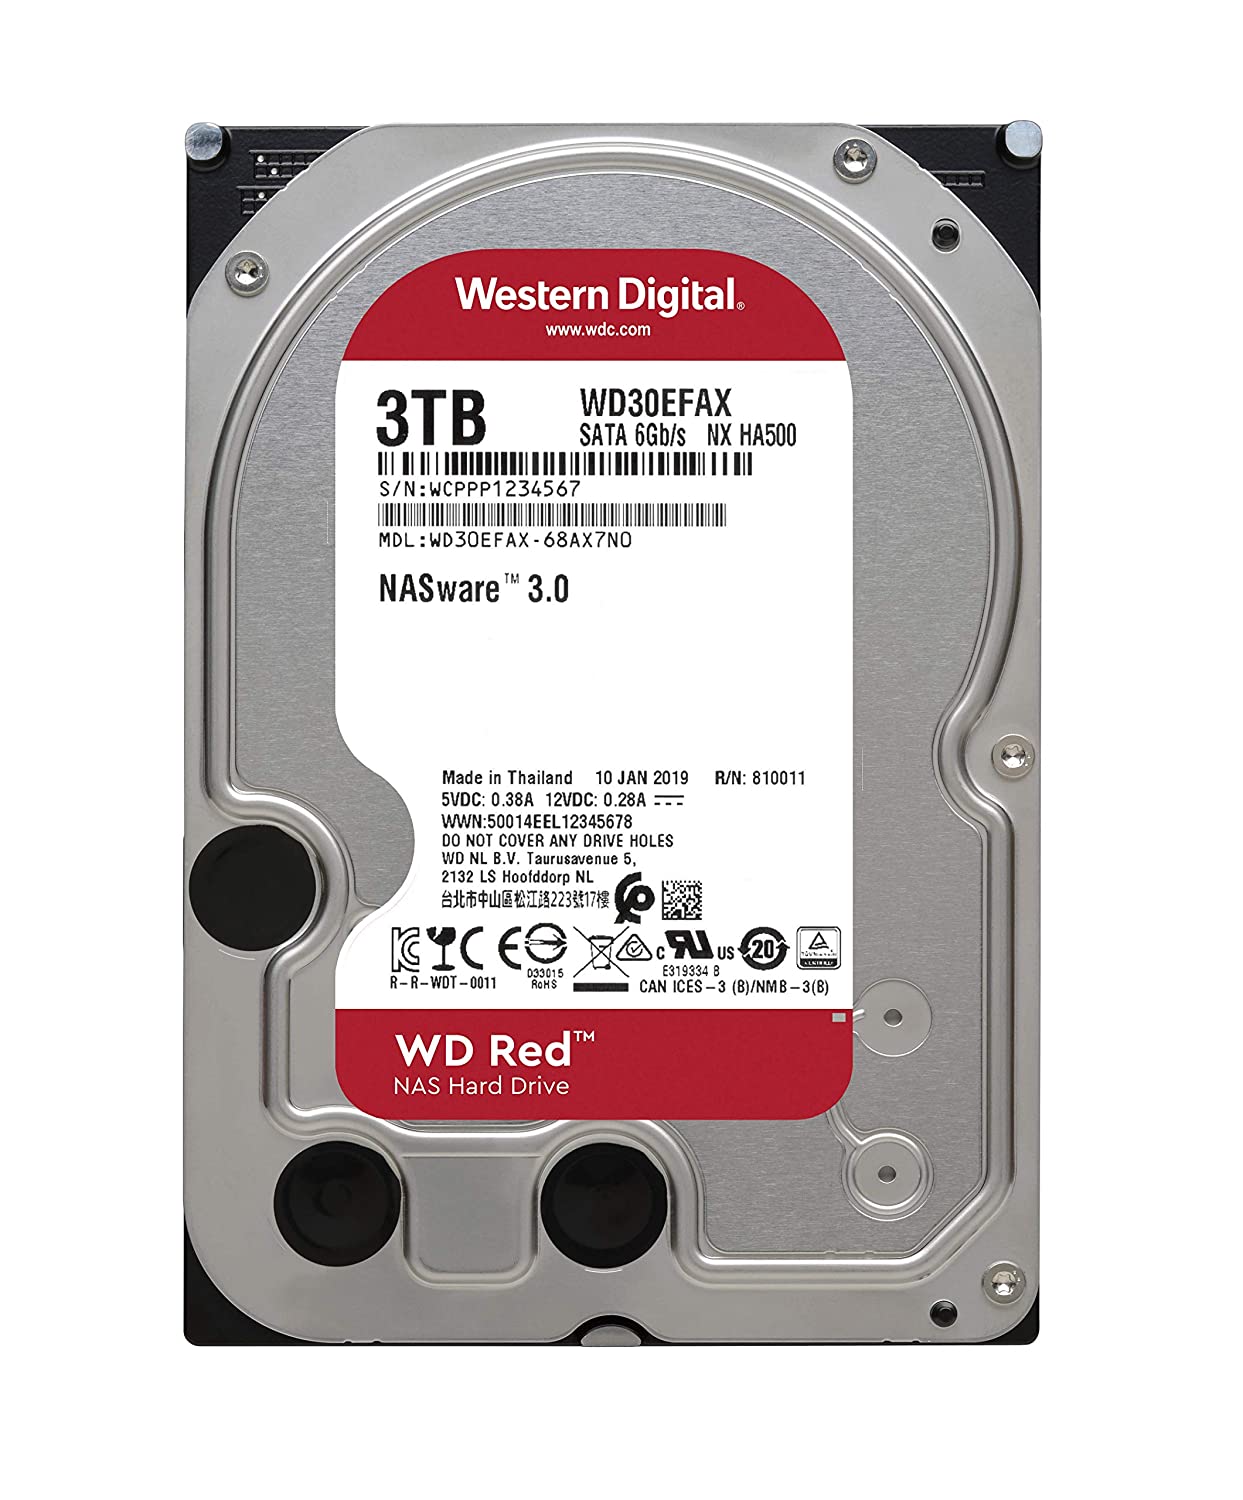 Western Digital WD Red 3TB NAS Internal Hard Drive - 5400 RPM Class, SATA 6 Gb/s, 256 MB Cache, 3.5" - WD30EFAX